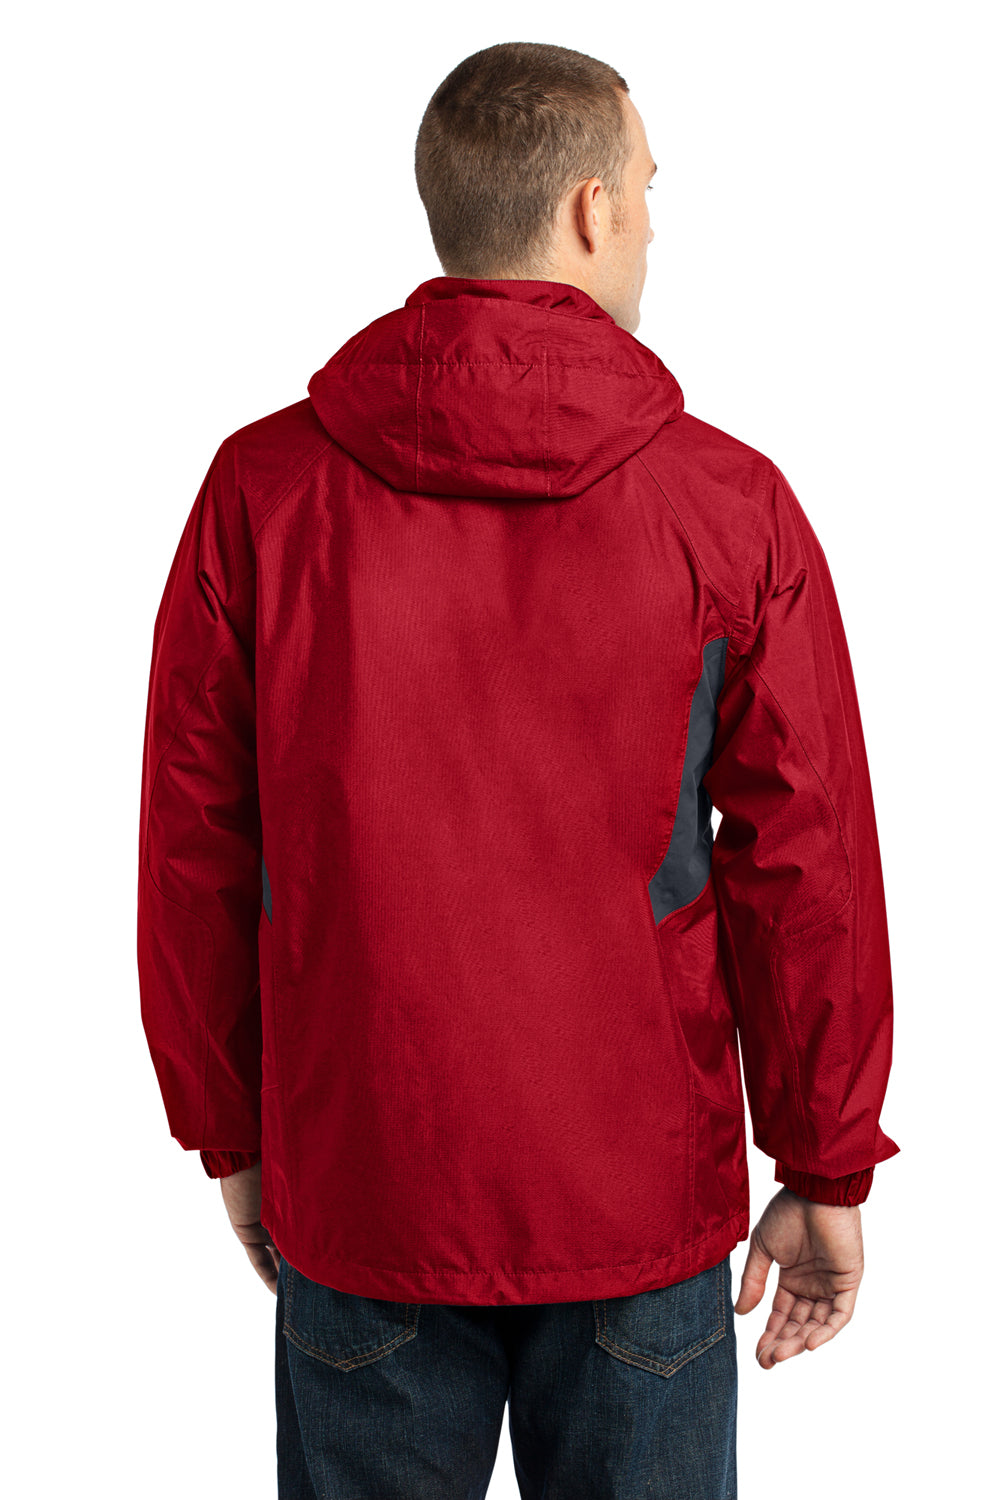 Eddie Bauer EB550 Mens Waterproof Full Zip Hooded Jacket Red Back